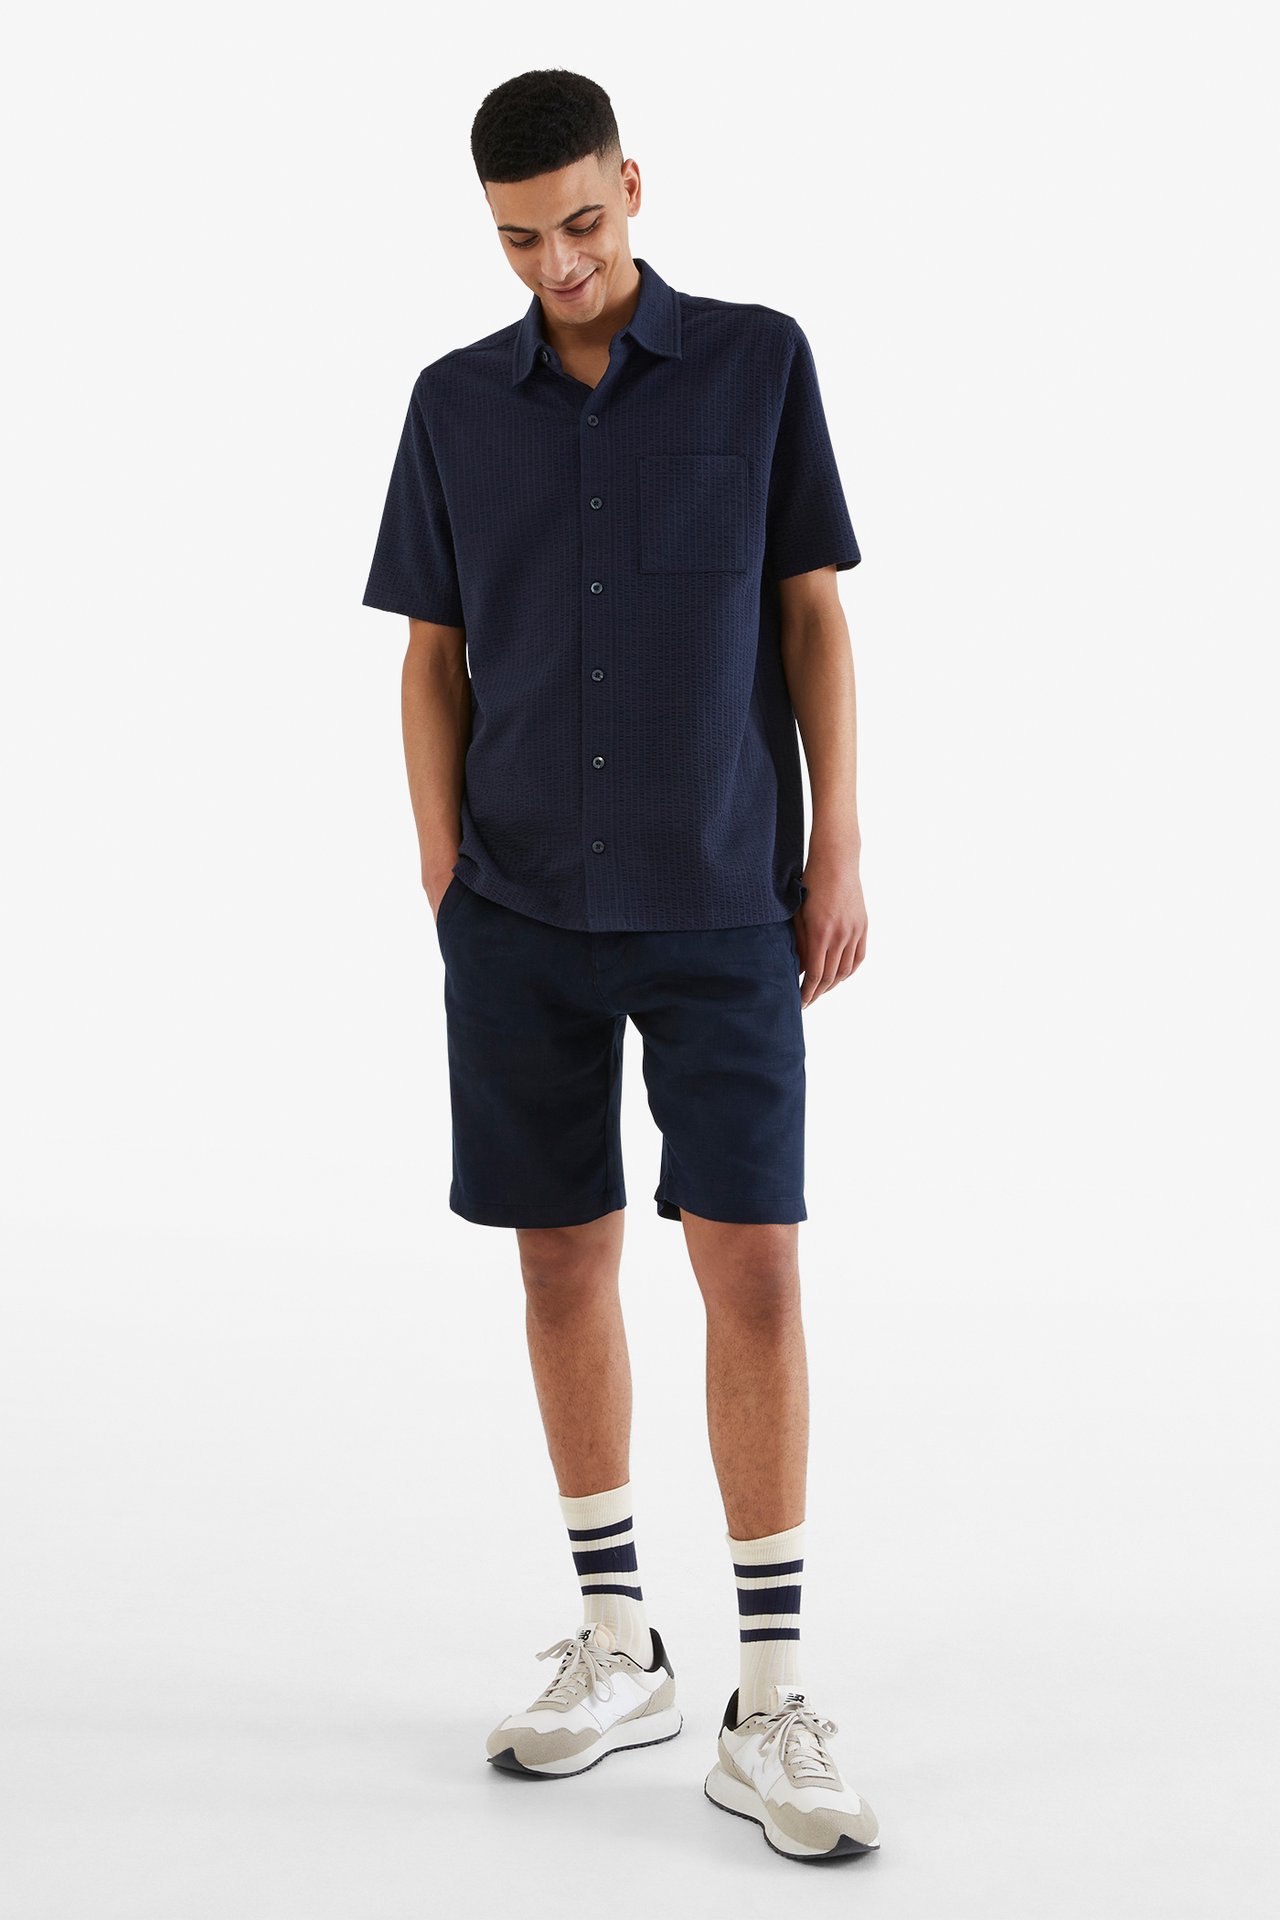 Tennisskjorte i trikot - Mørkeblå - 189cm / Storlek: M - 1